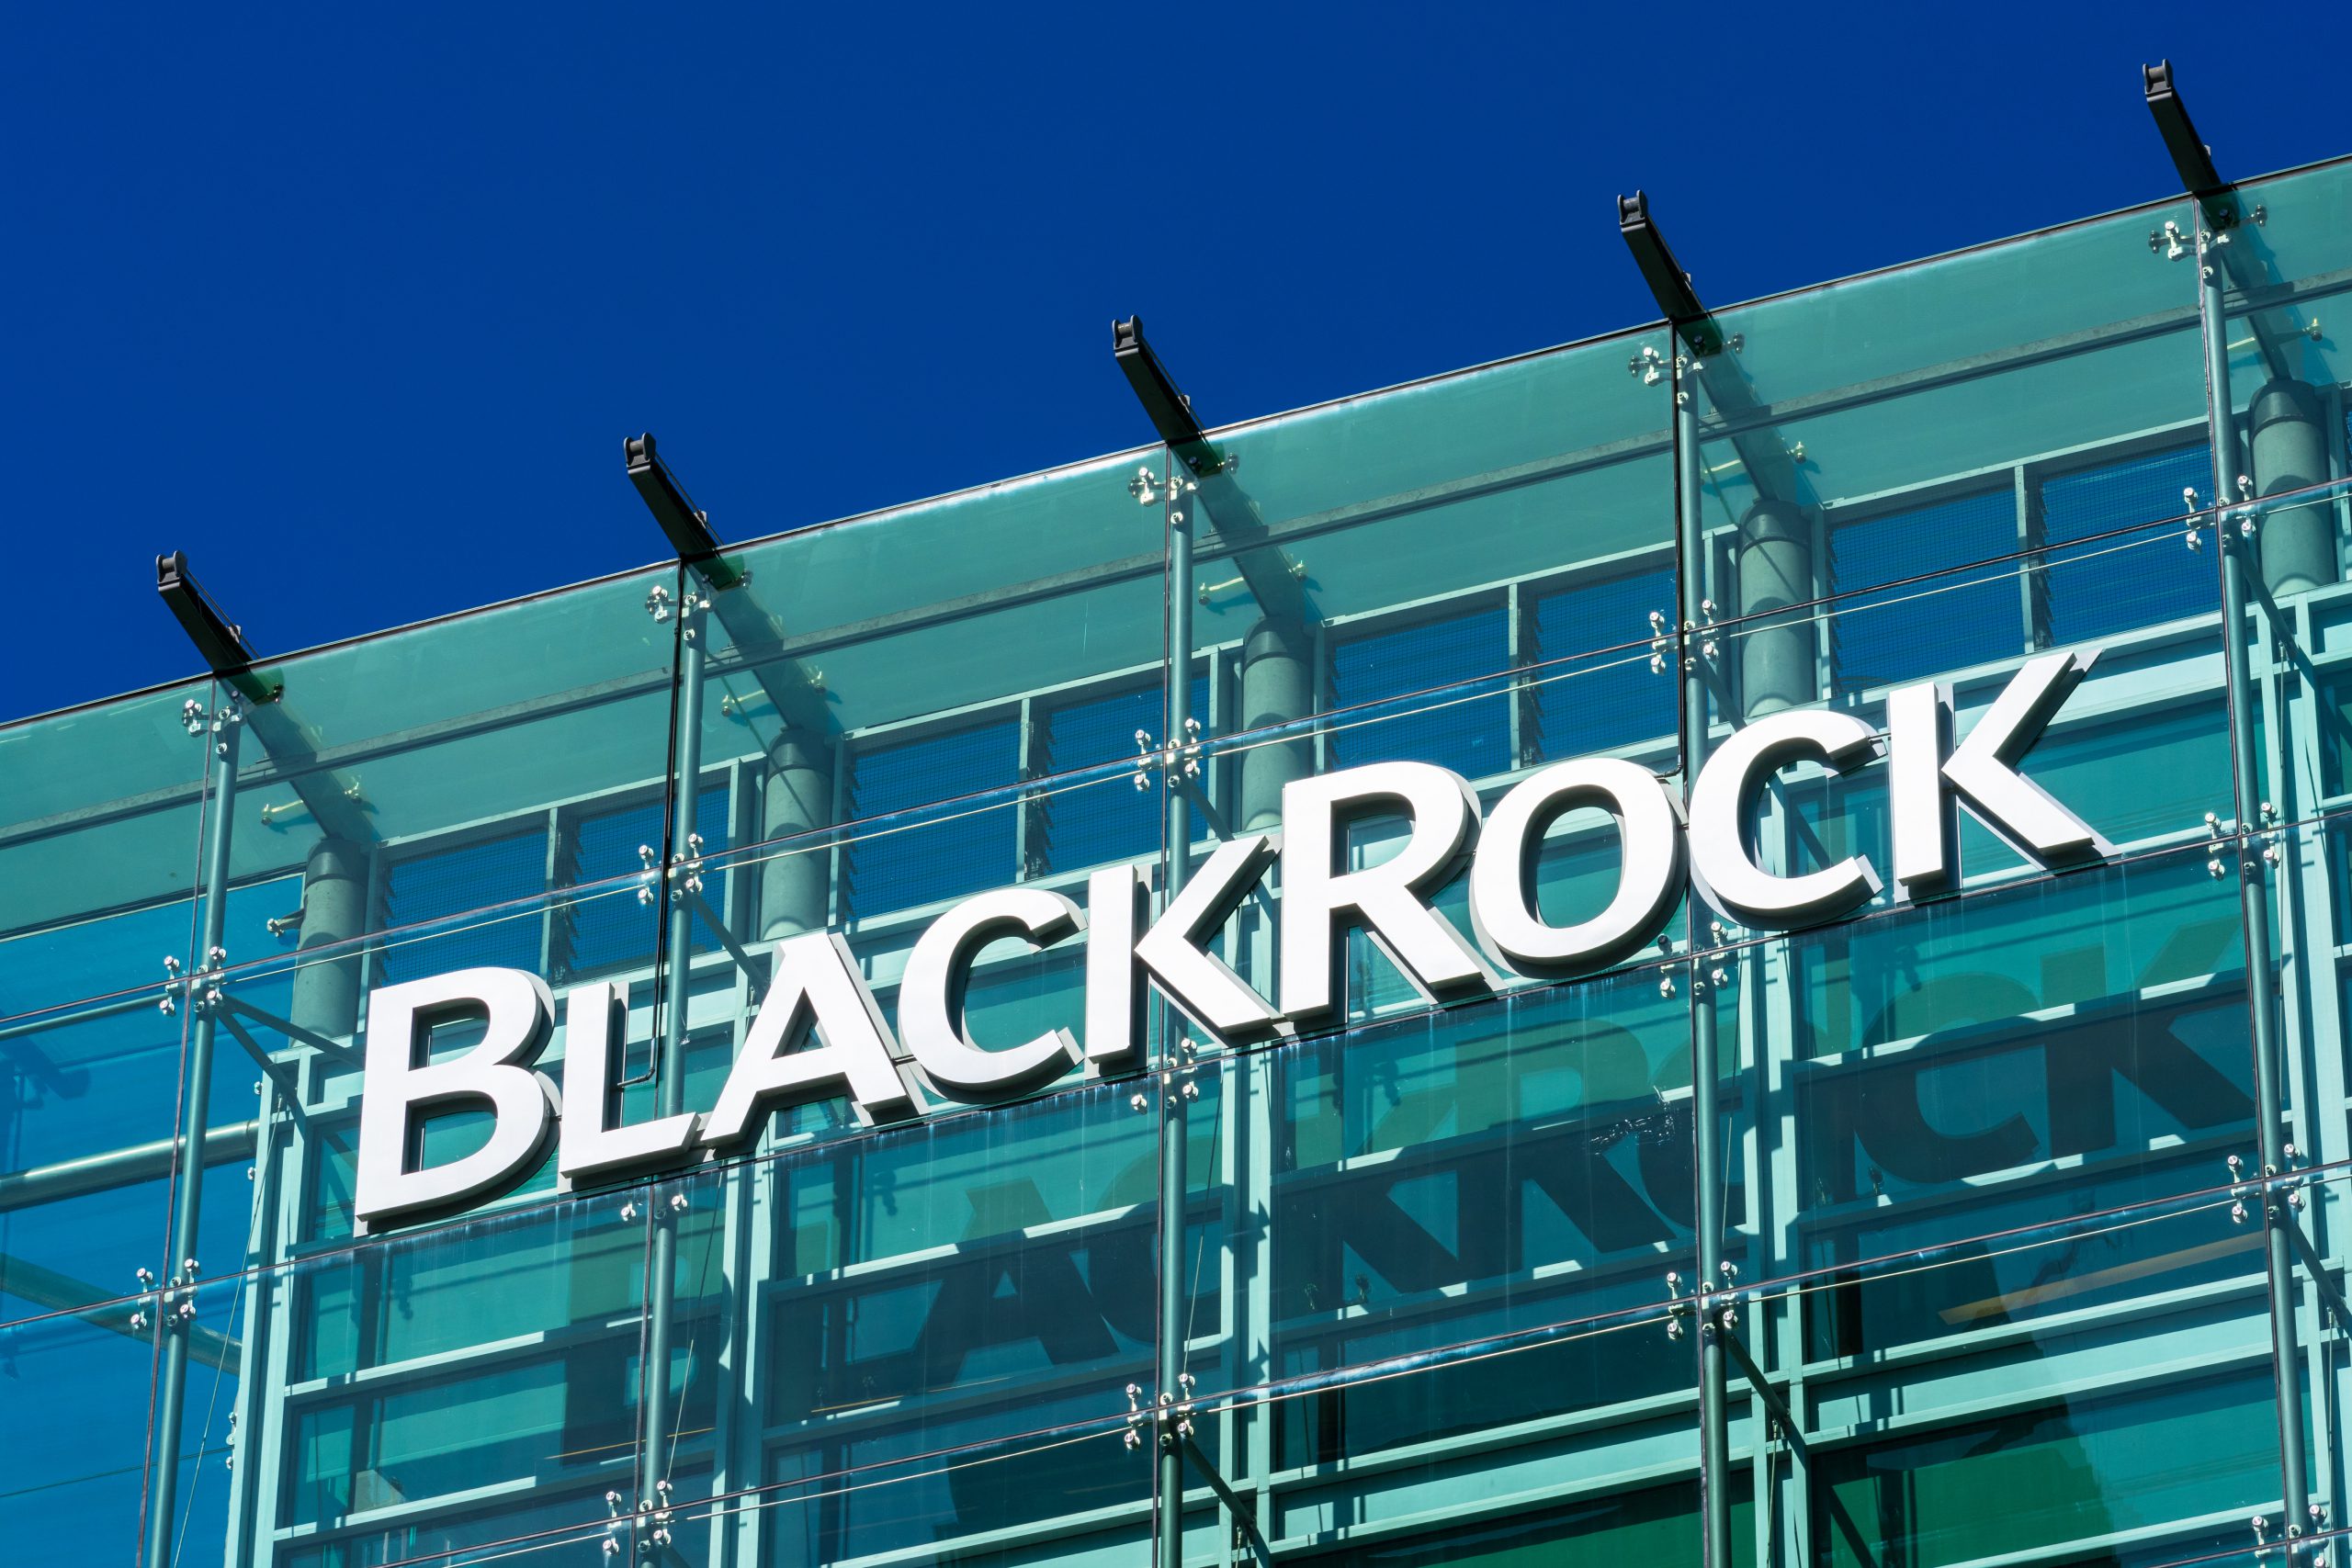 Dan Tapiero: “Bitcoin is a huge opportunity for Blackrock”
